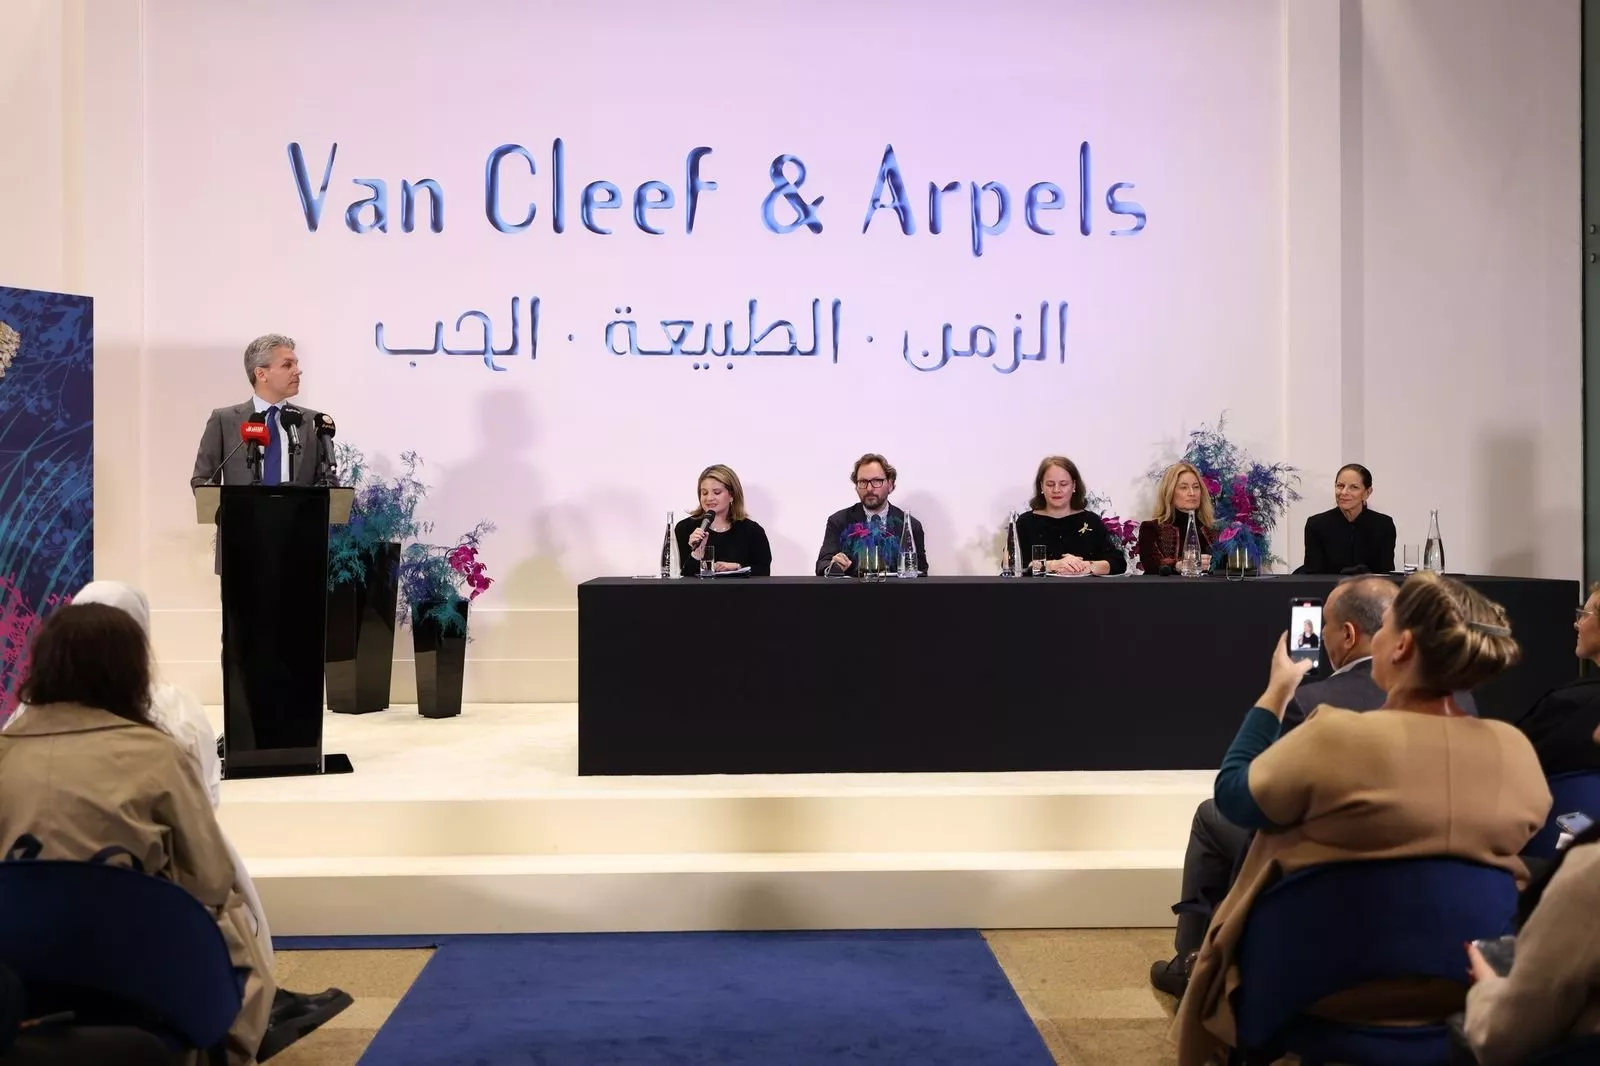 معرض الزمن، الطبيعة، الحب لدار فان كليف أند آربلز يختتم فعالياته بالمتحف الوطني السعودي